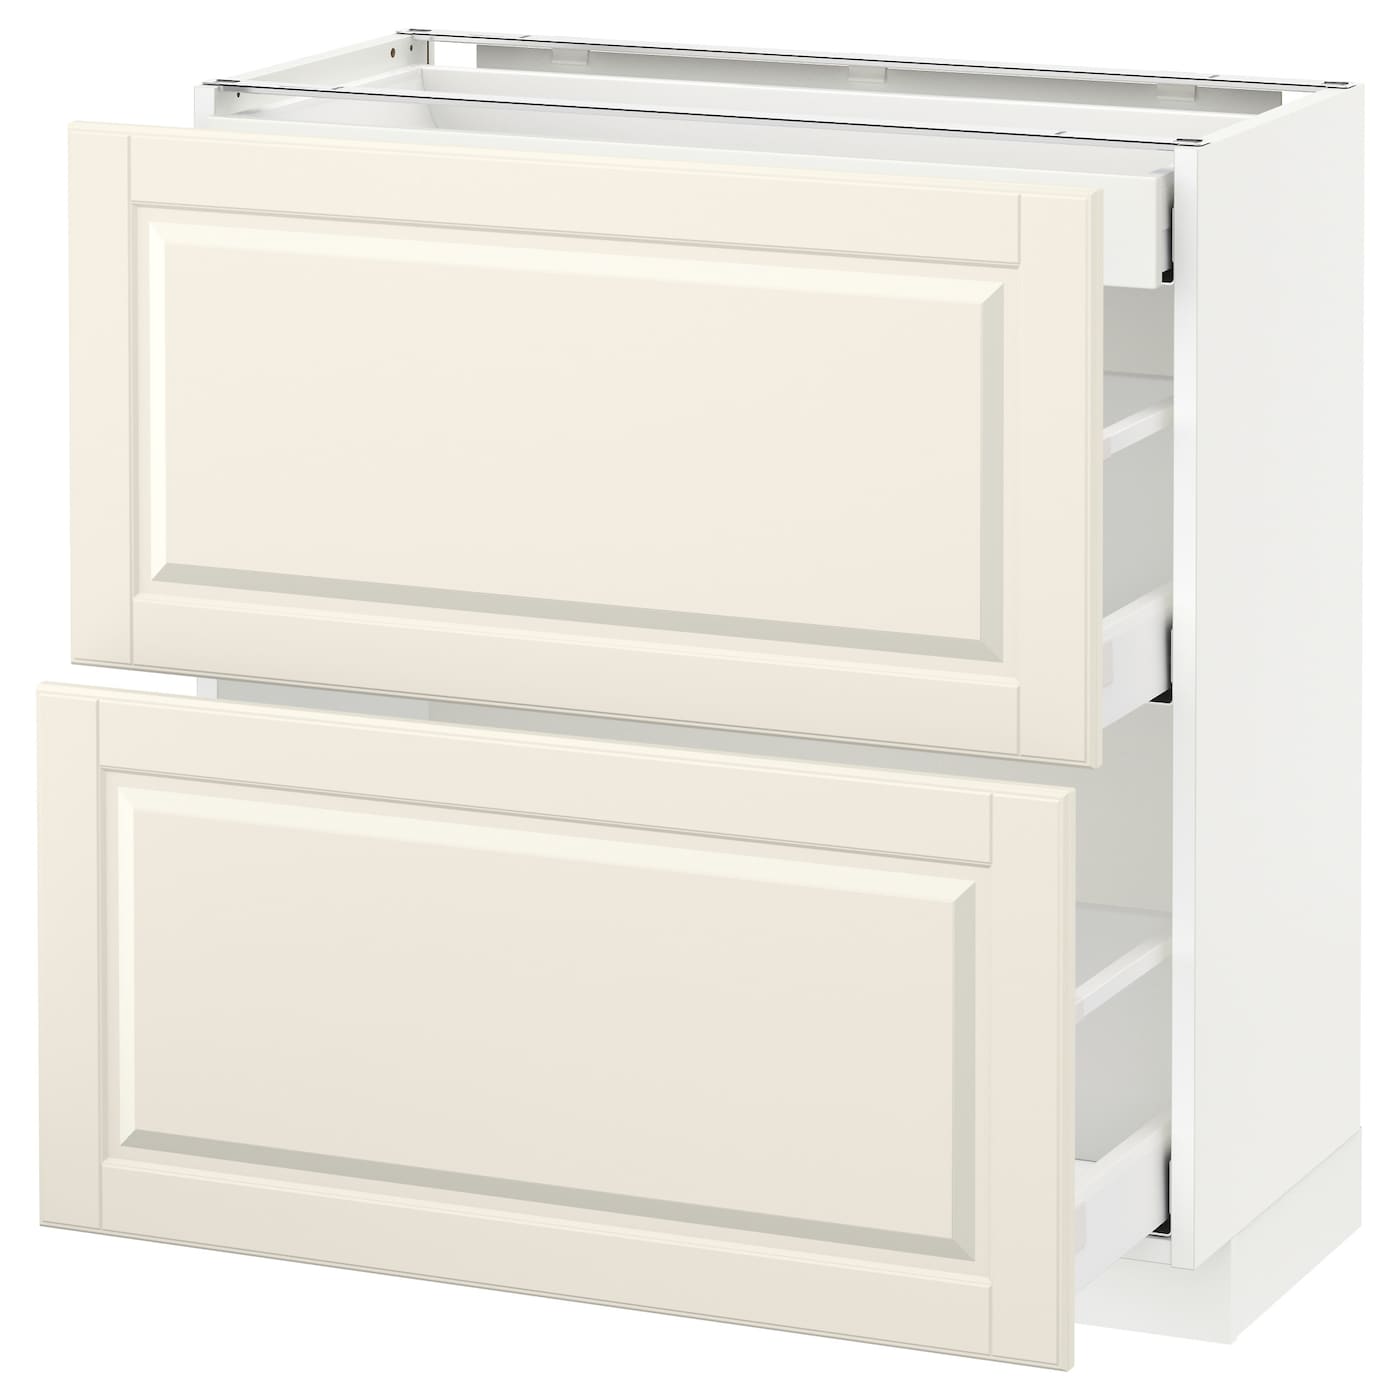 Напольный кухонный шкаф  - IKEA METOD MAXIMERA, 88x39,5x80см, белый, МЕТОД МАКСИМЕРА ИКЕА